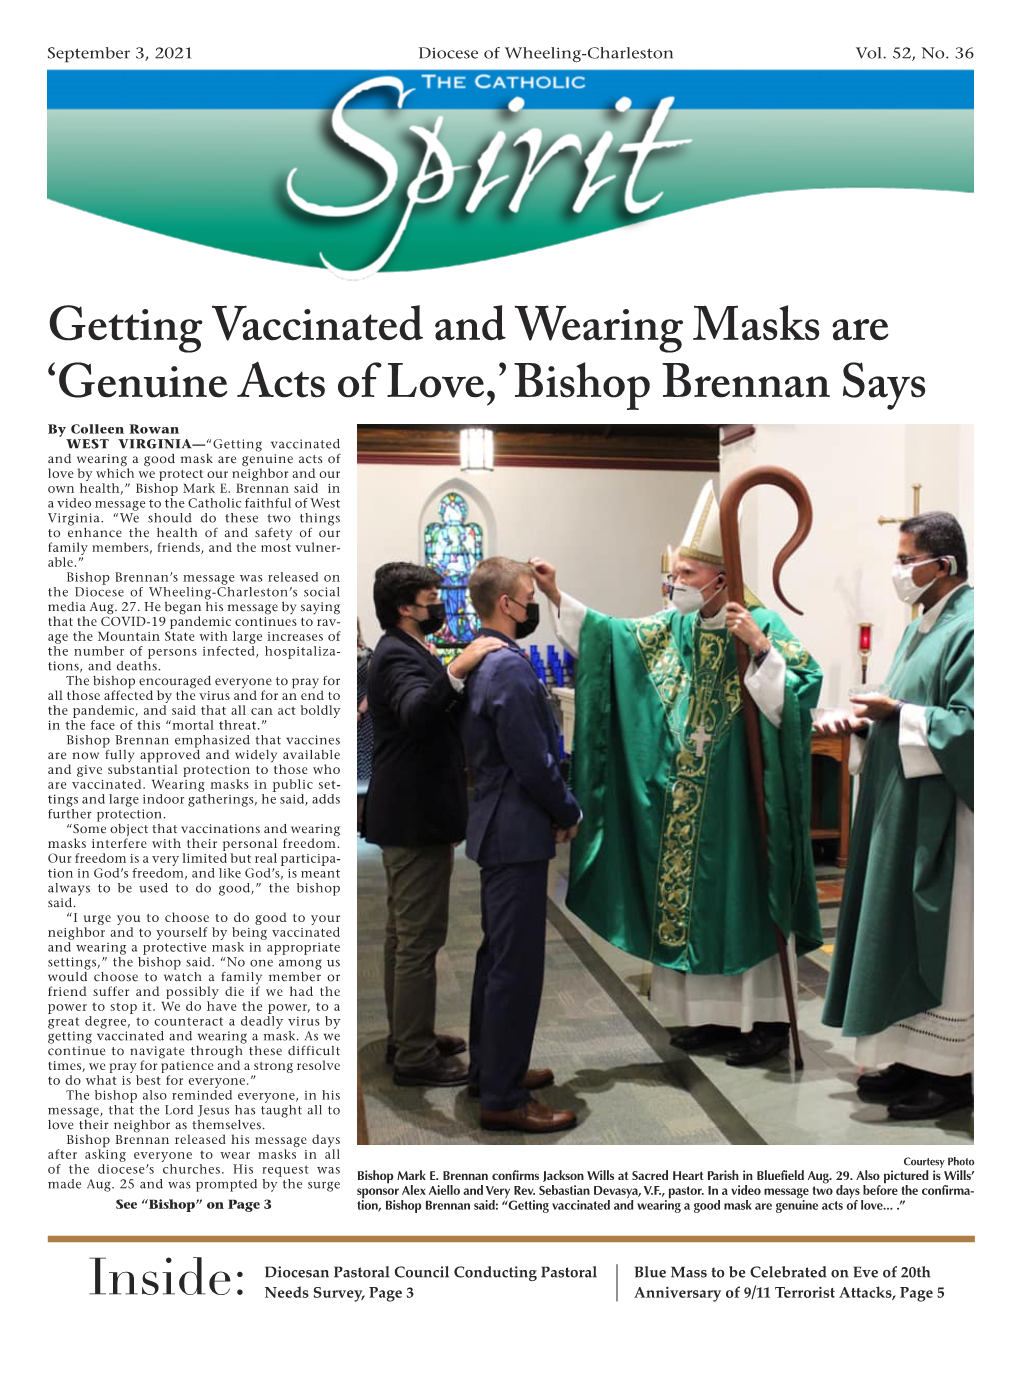 'Genuine Acts of Love,' Bishop Brennan Says